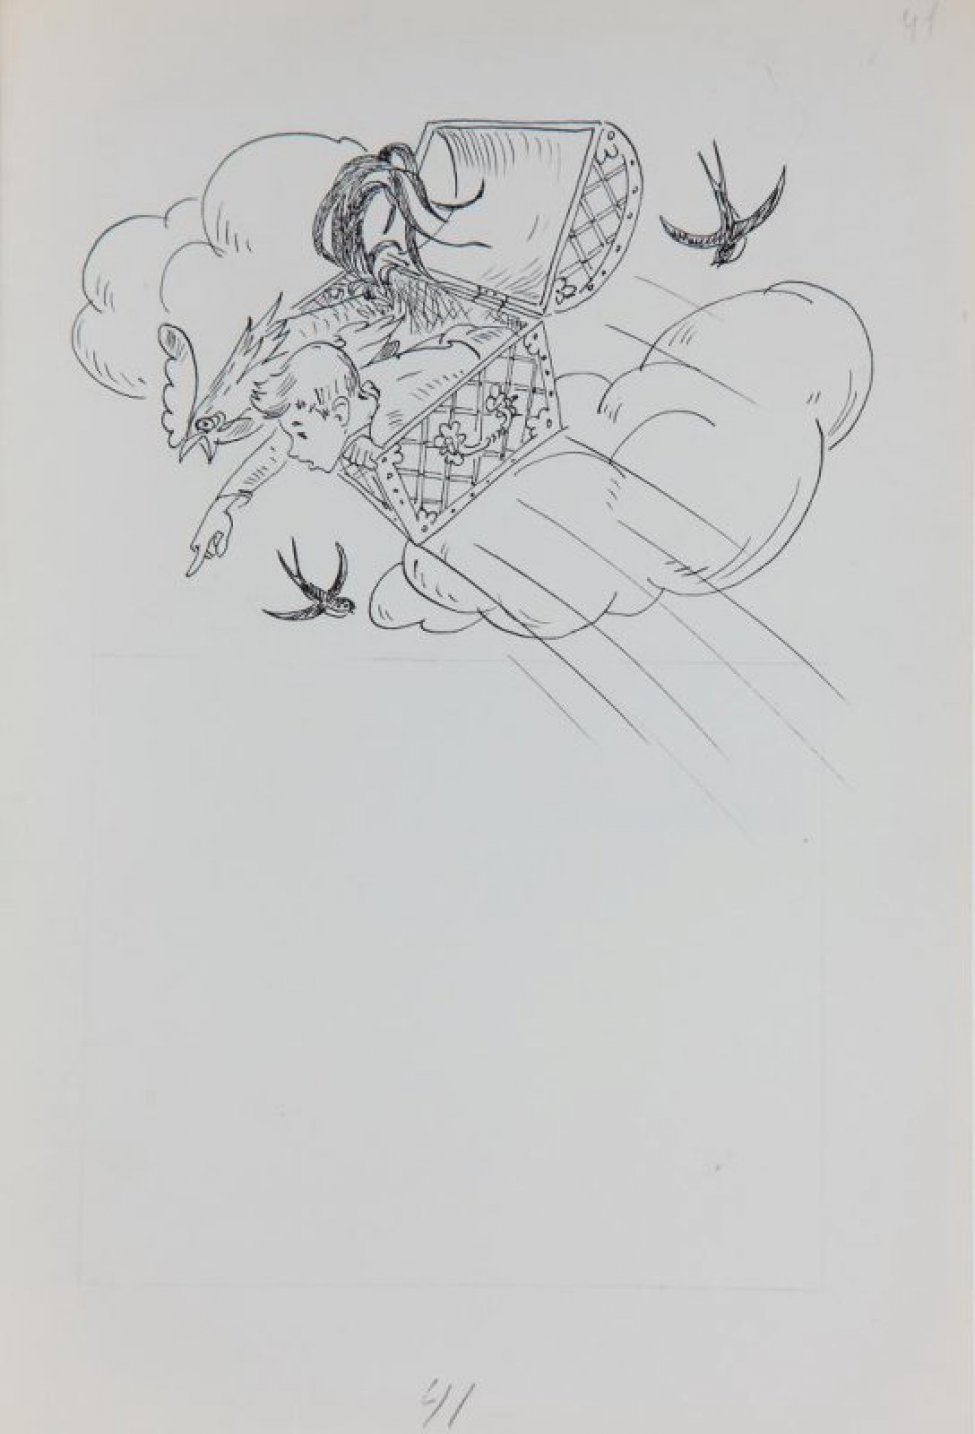 В верхней части листа - стилизованное изображение летящего среди облаков и ласточек сундука с сидящими в нем петухом и мальчиком. В нижней части - разметка карандашом.